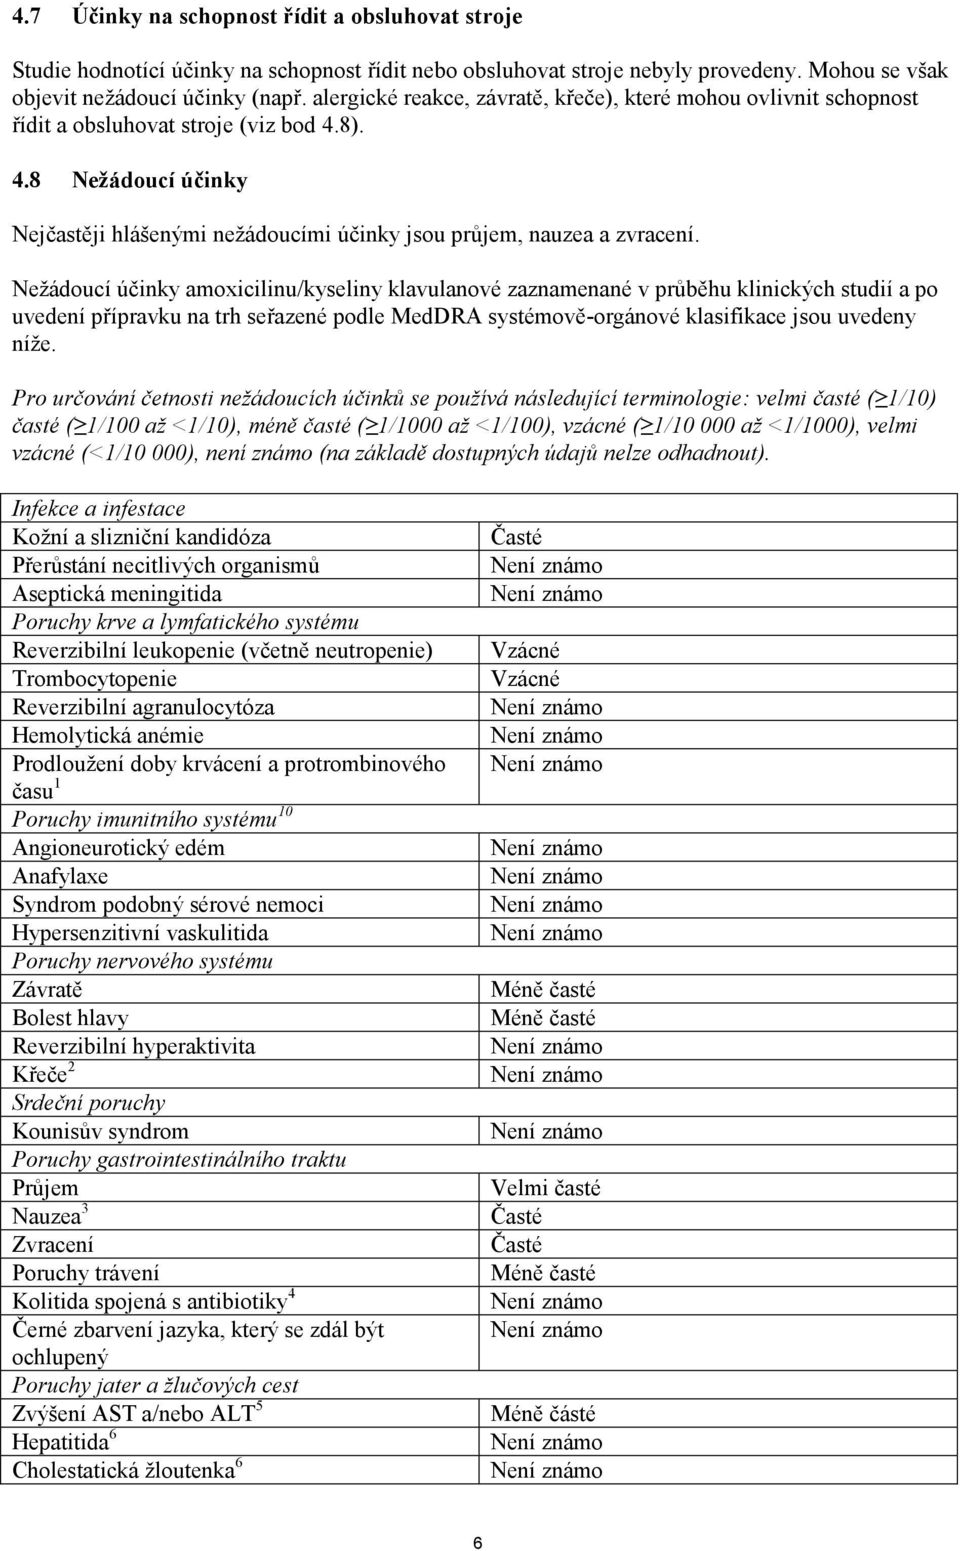 Nežádoucí účinky amoxicilinu/kyseliny klavulanové zaznamenané v průběhu klinických studií a po uvedení přípravku na trh seřazené podle MedDRA systémově-orgánové klasifikace jsou uvedeny níže.